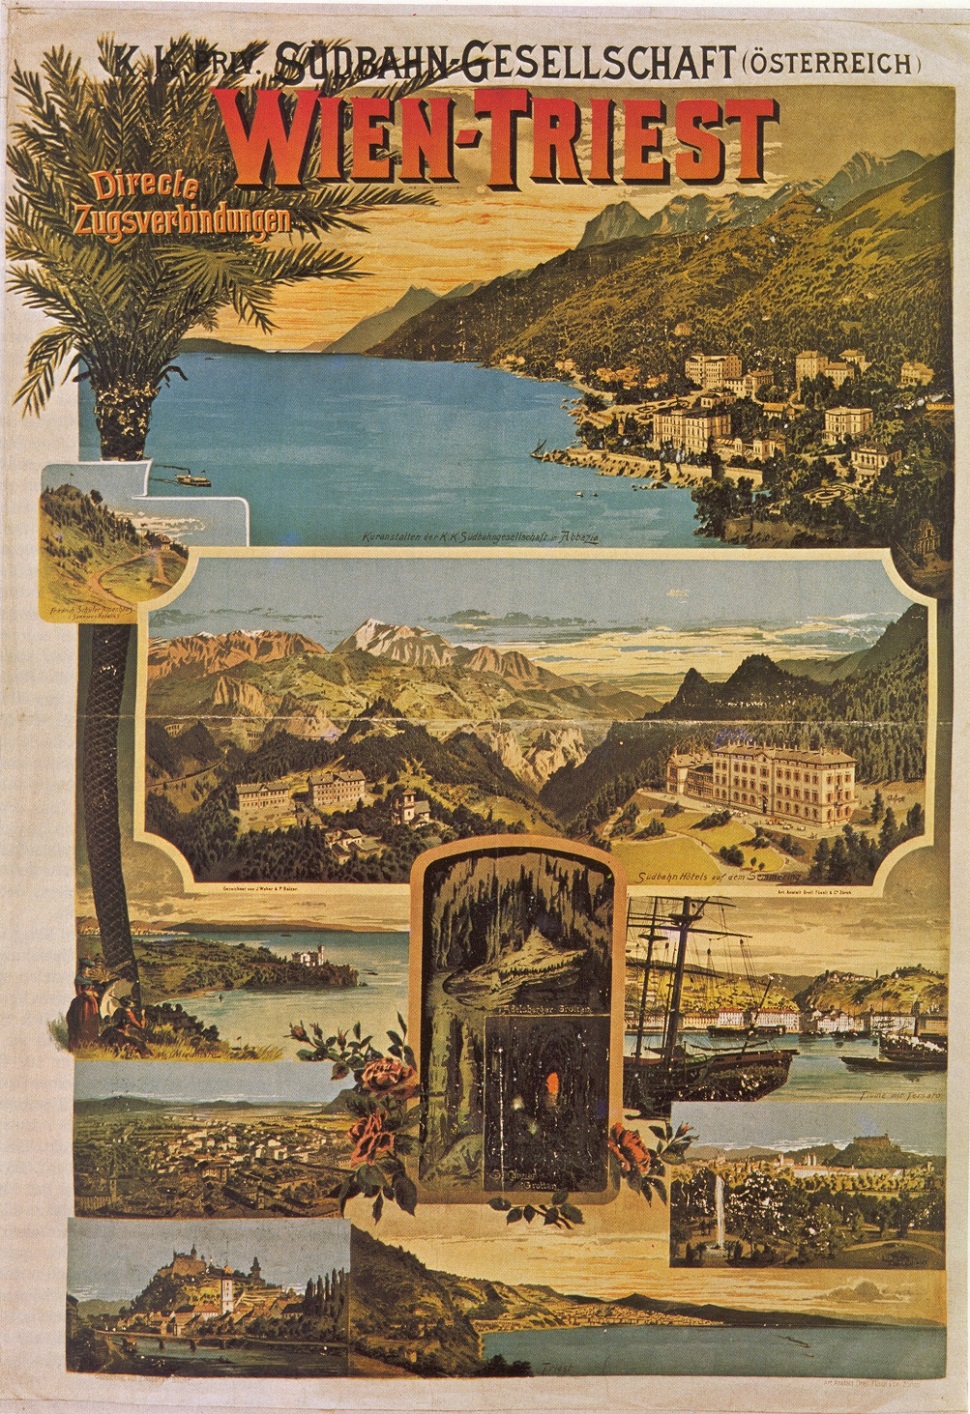 비엔나-트리에스테 두 도시를 연결하는 오스트리아의 남부철도선 홍보 포스터. 스위스의 오렐 휘슬리(Orell Füssli)가 1989년 그려서 리토그라피로 복사, 배포되었다. 112,5x80 cm. Wienbibliothek. 이 철도선을 이용하면 알프스 끝자락 휴양지인 제머링, 오스트리아 제2도시인 그라츠, 슬로바니아의 루블리아나, 이탈리아의 해안도시 미라마레와 항구 도시 트리에스테에 도착한다.